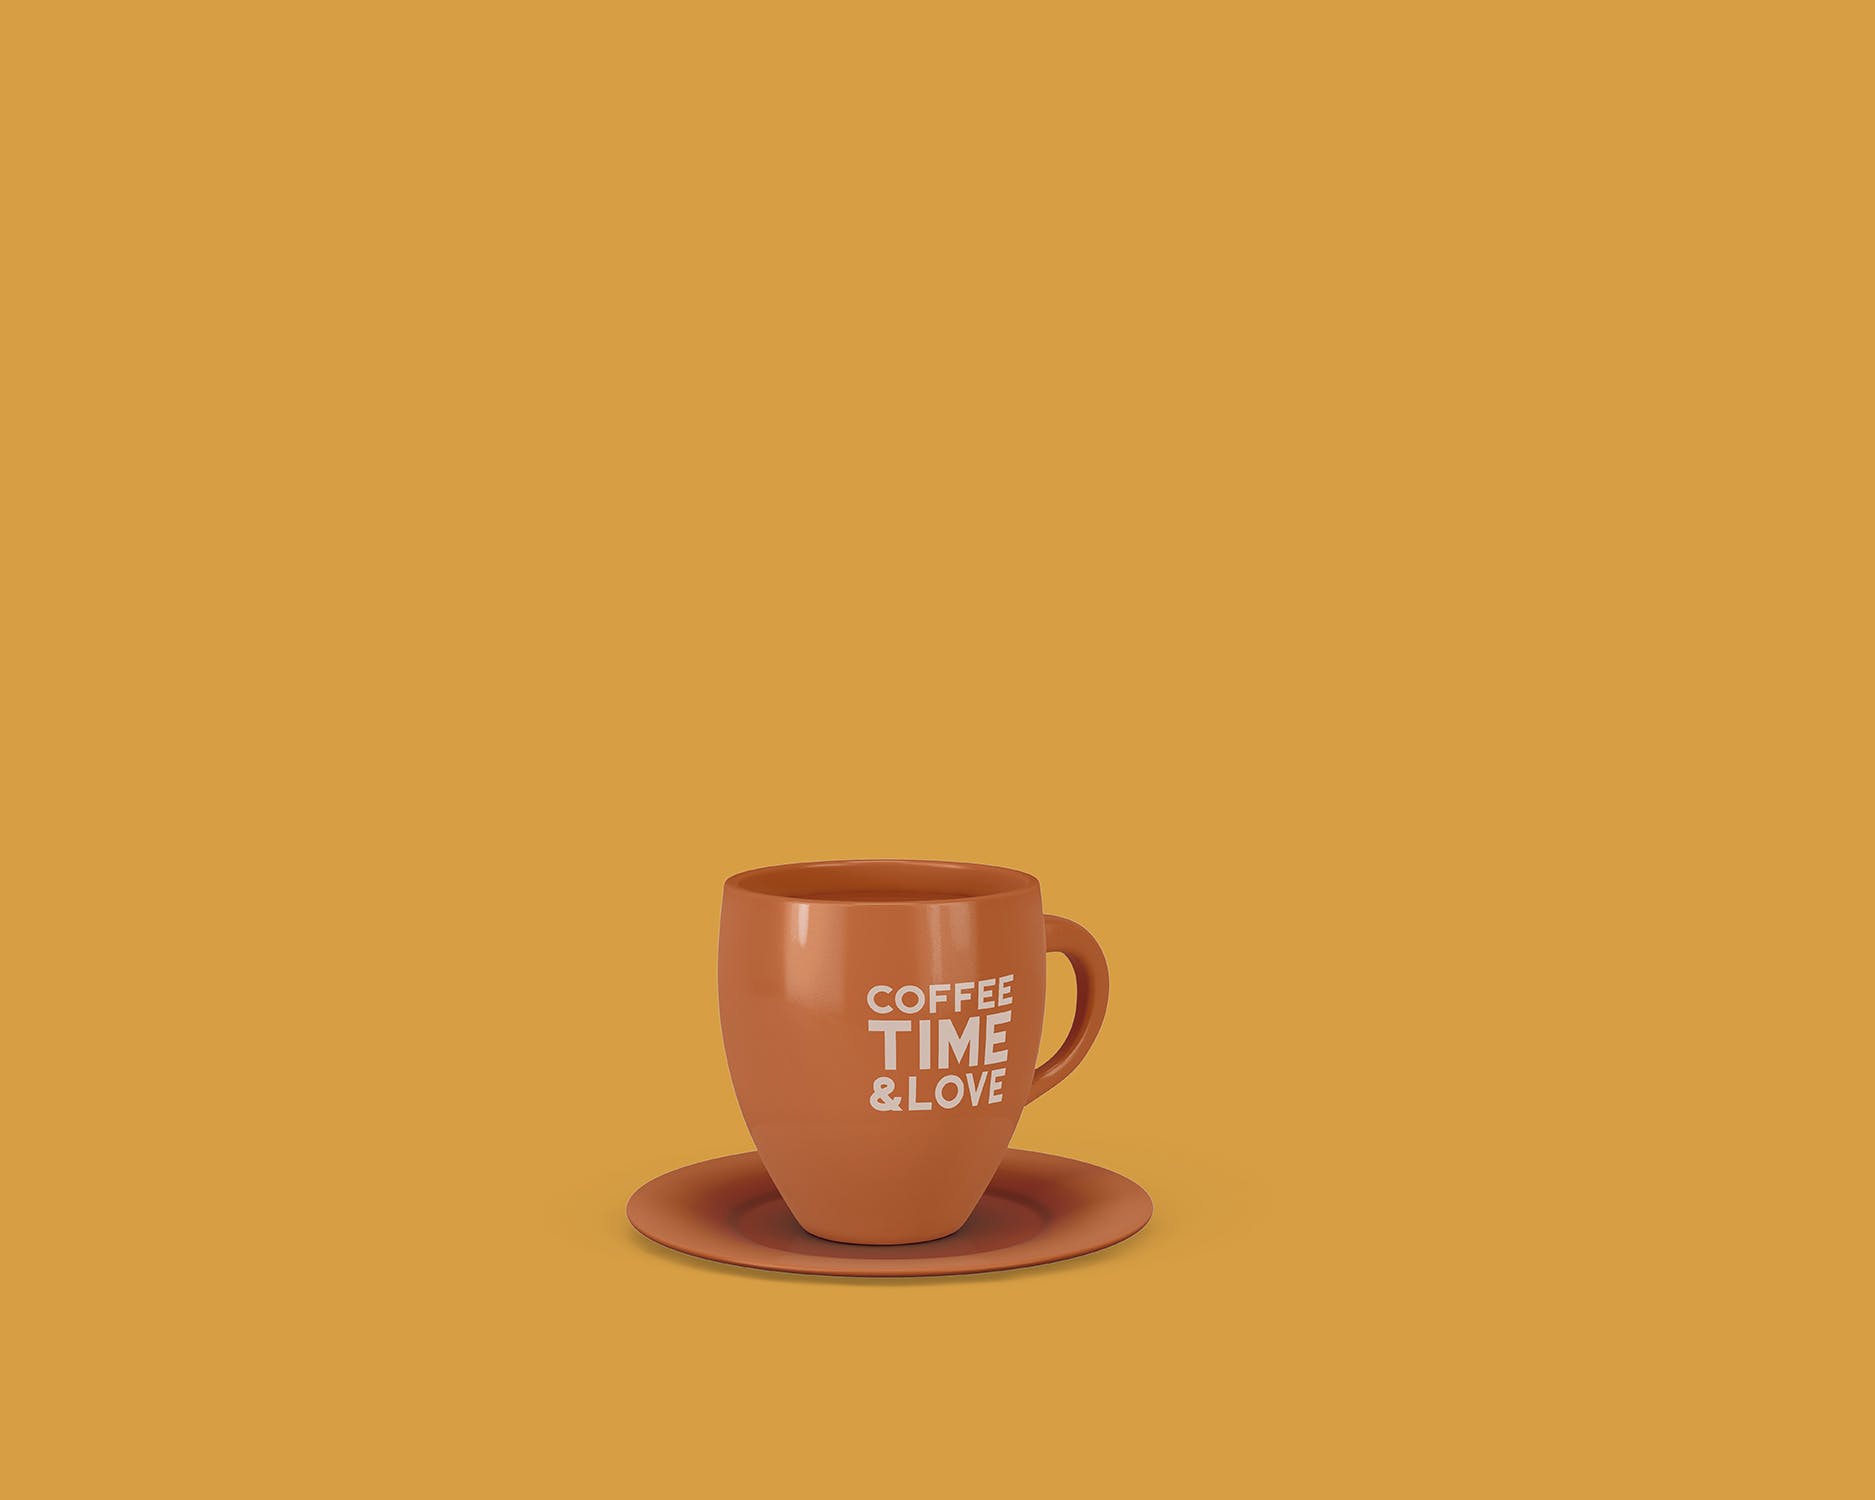 8个咖啡马克杯设计图蚂蚁素材精选 8 Coffee Cup Mockups插图(5)